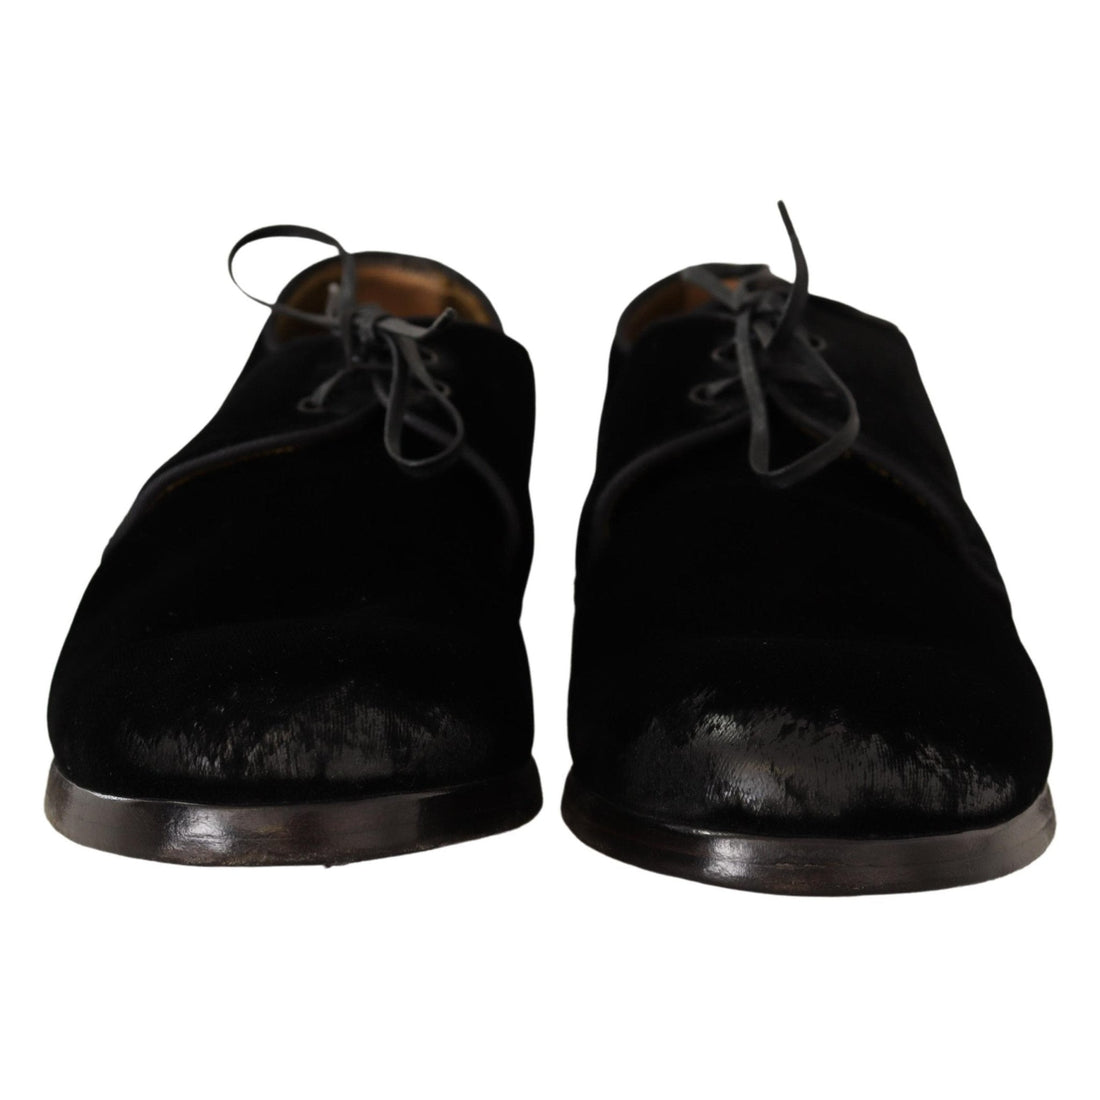 Dolce & Gabbana Black Velvet Lace Up Aged Style Derby Shoes - Paris Deluxe